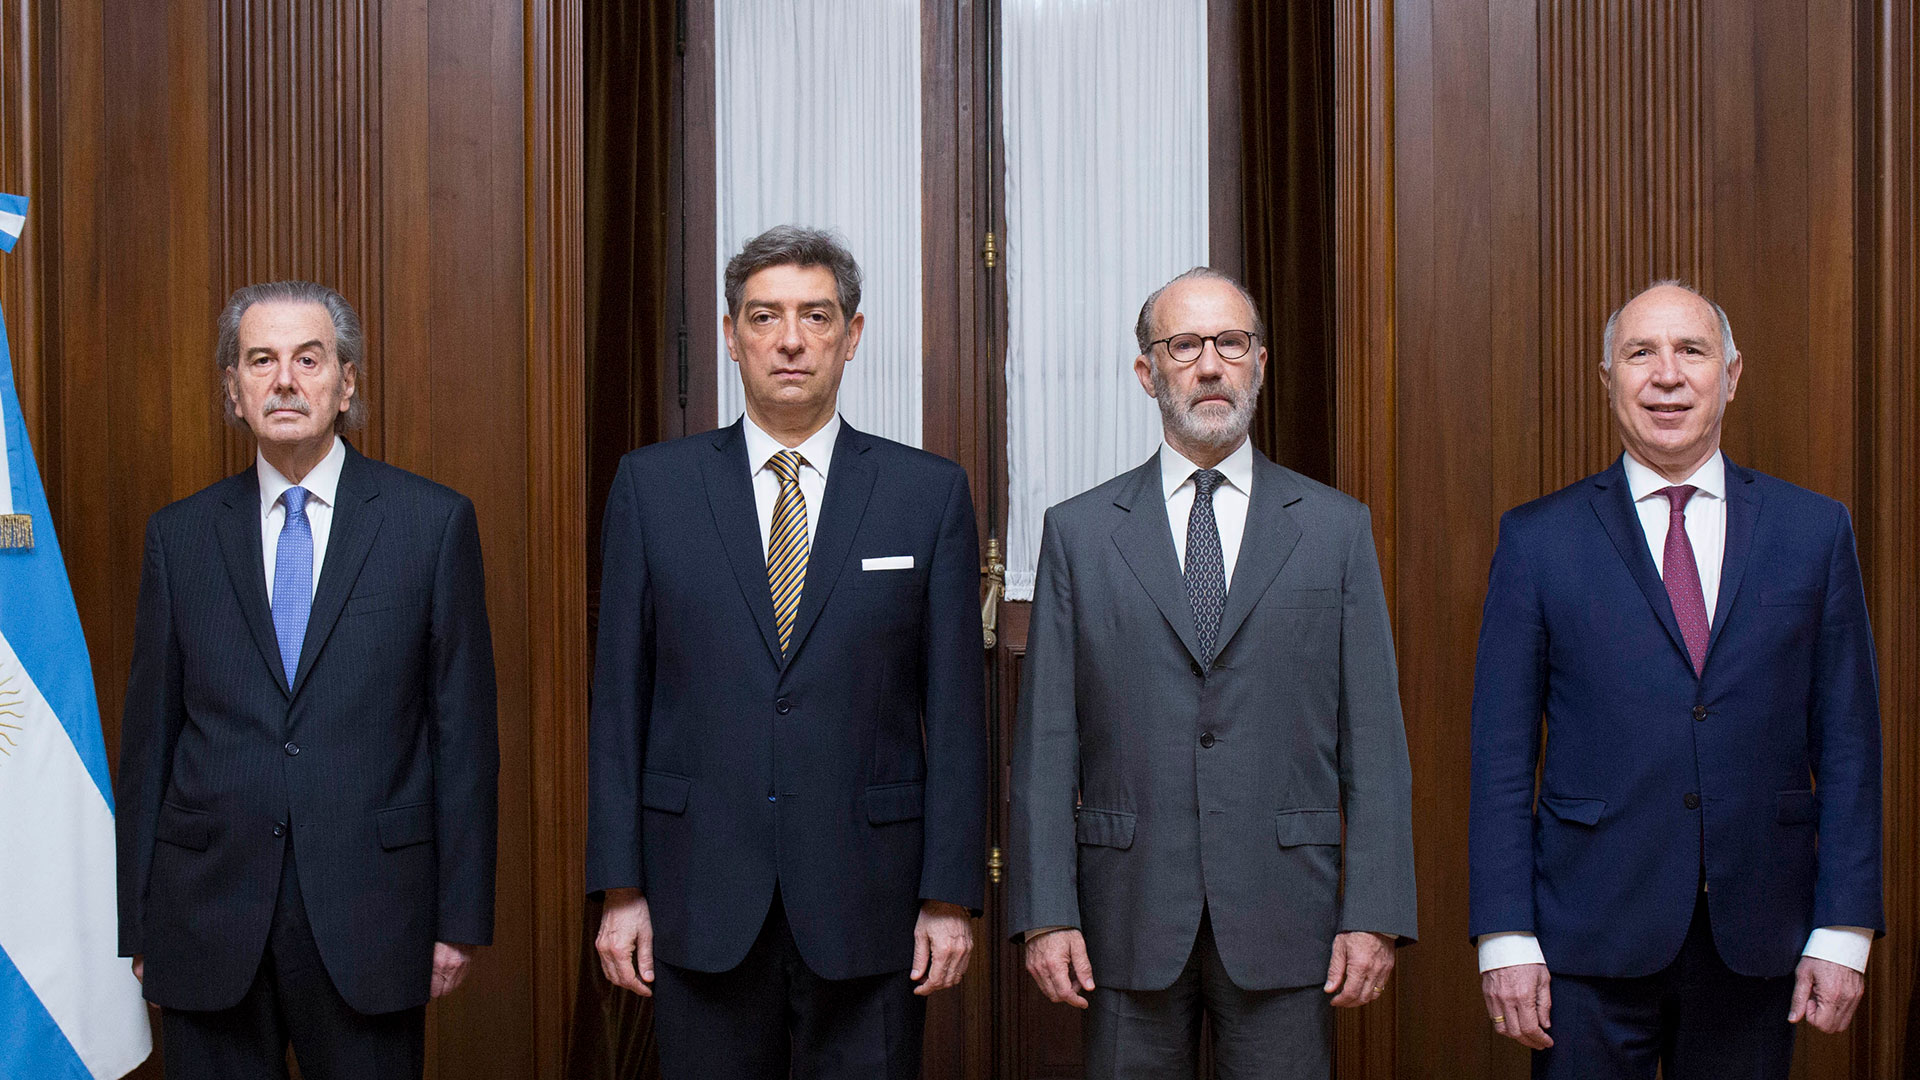 De izquierda a derecha, los jueces de la Corte Suprema: Juan Carlos Maqueda, Horacio Rosatti (presidente), Carlos Rosenkrantz (vicepresidente), y Ricardo Lorenzetti